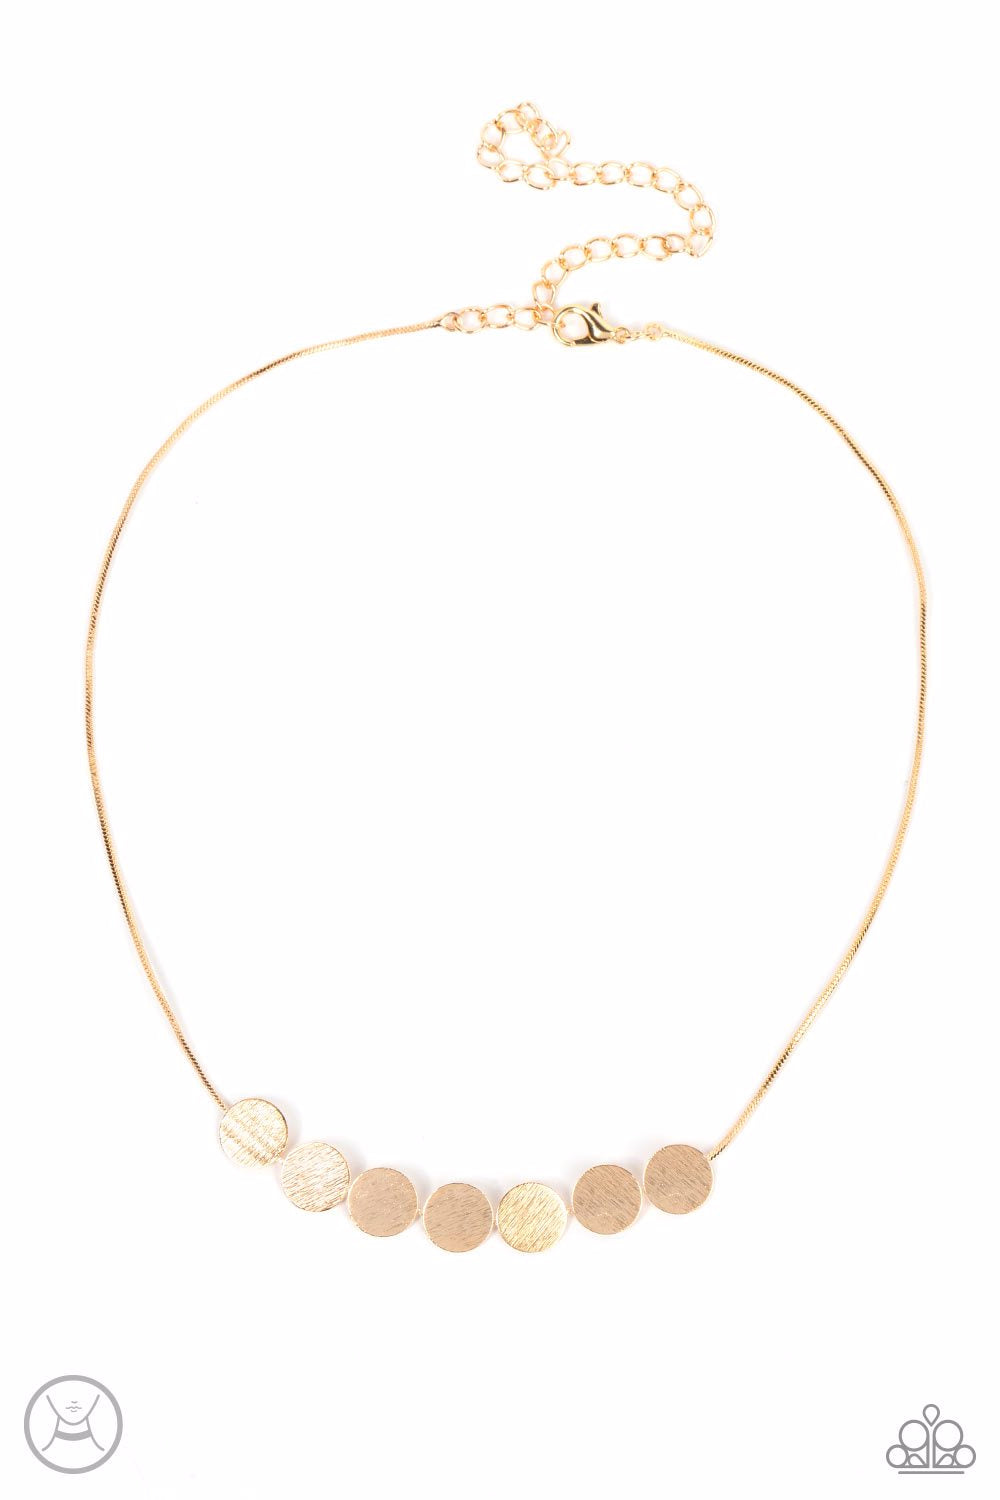 Multi layer choker rhinestone necklace – Monique Fashion Accessories